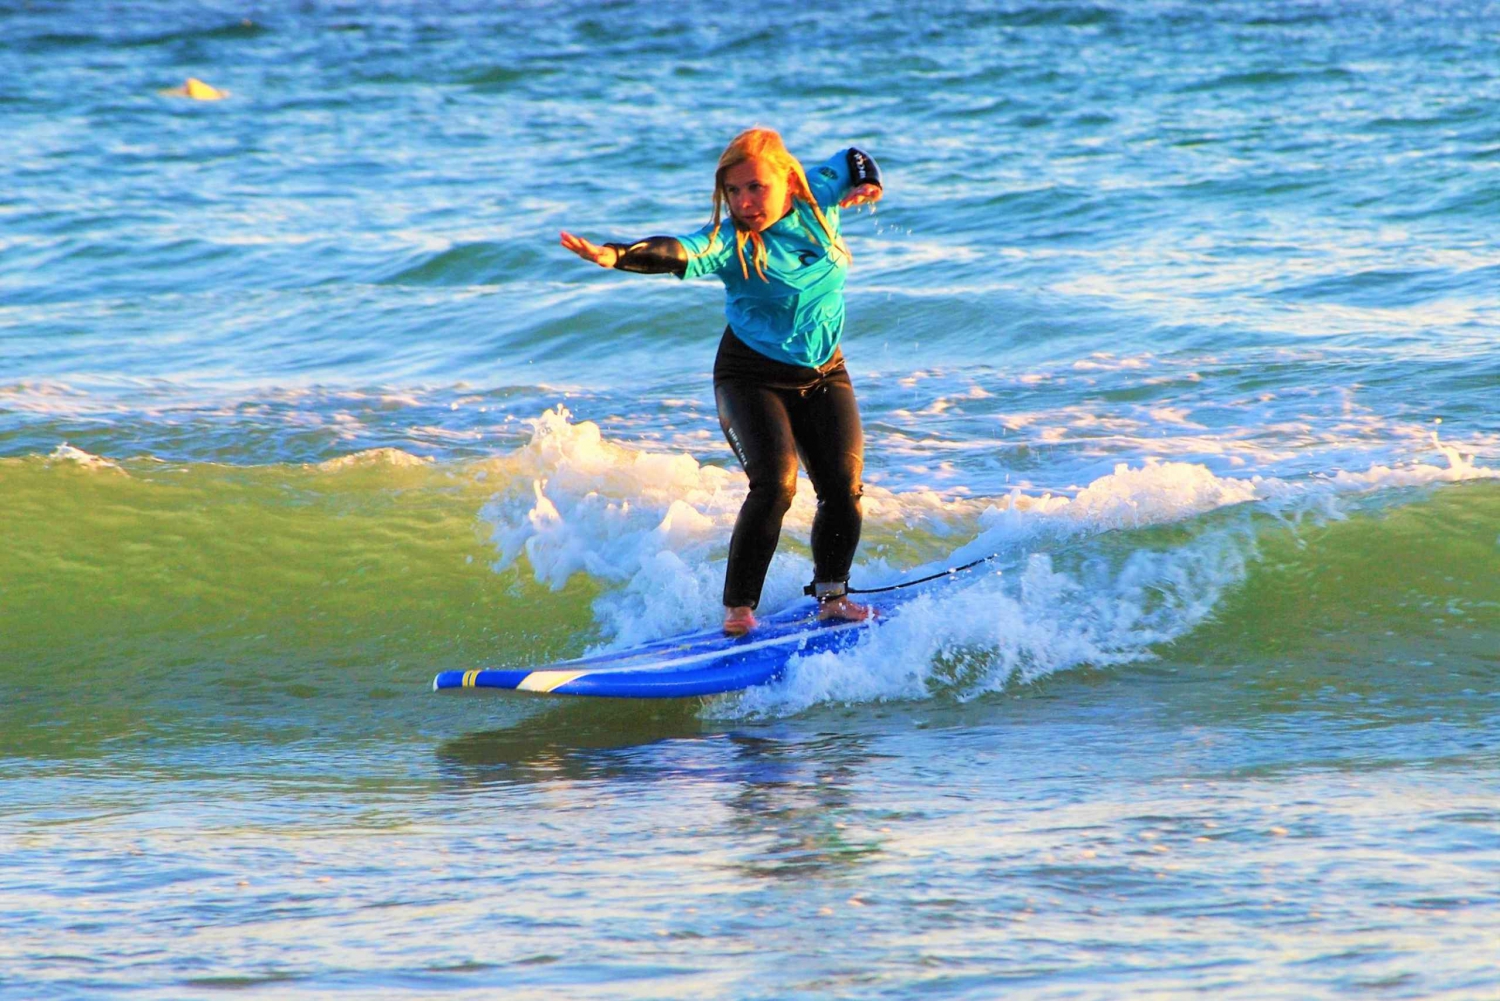 Albufeira: Surfkurs am Galé Strand